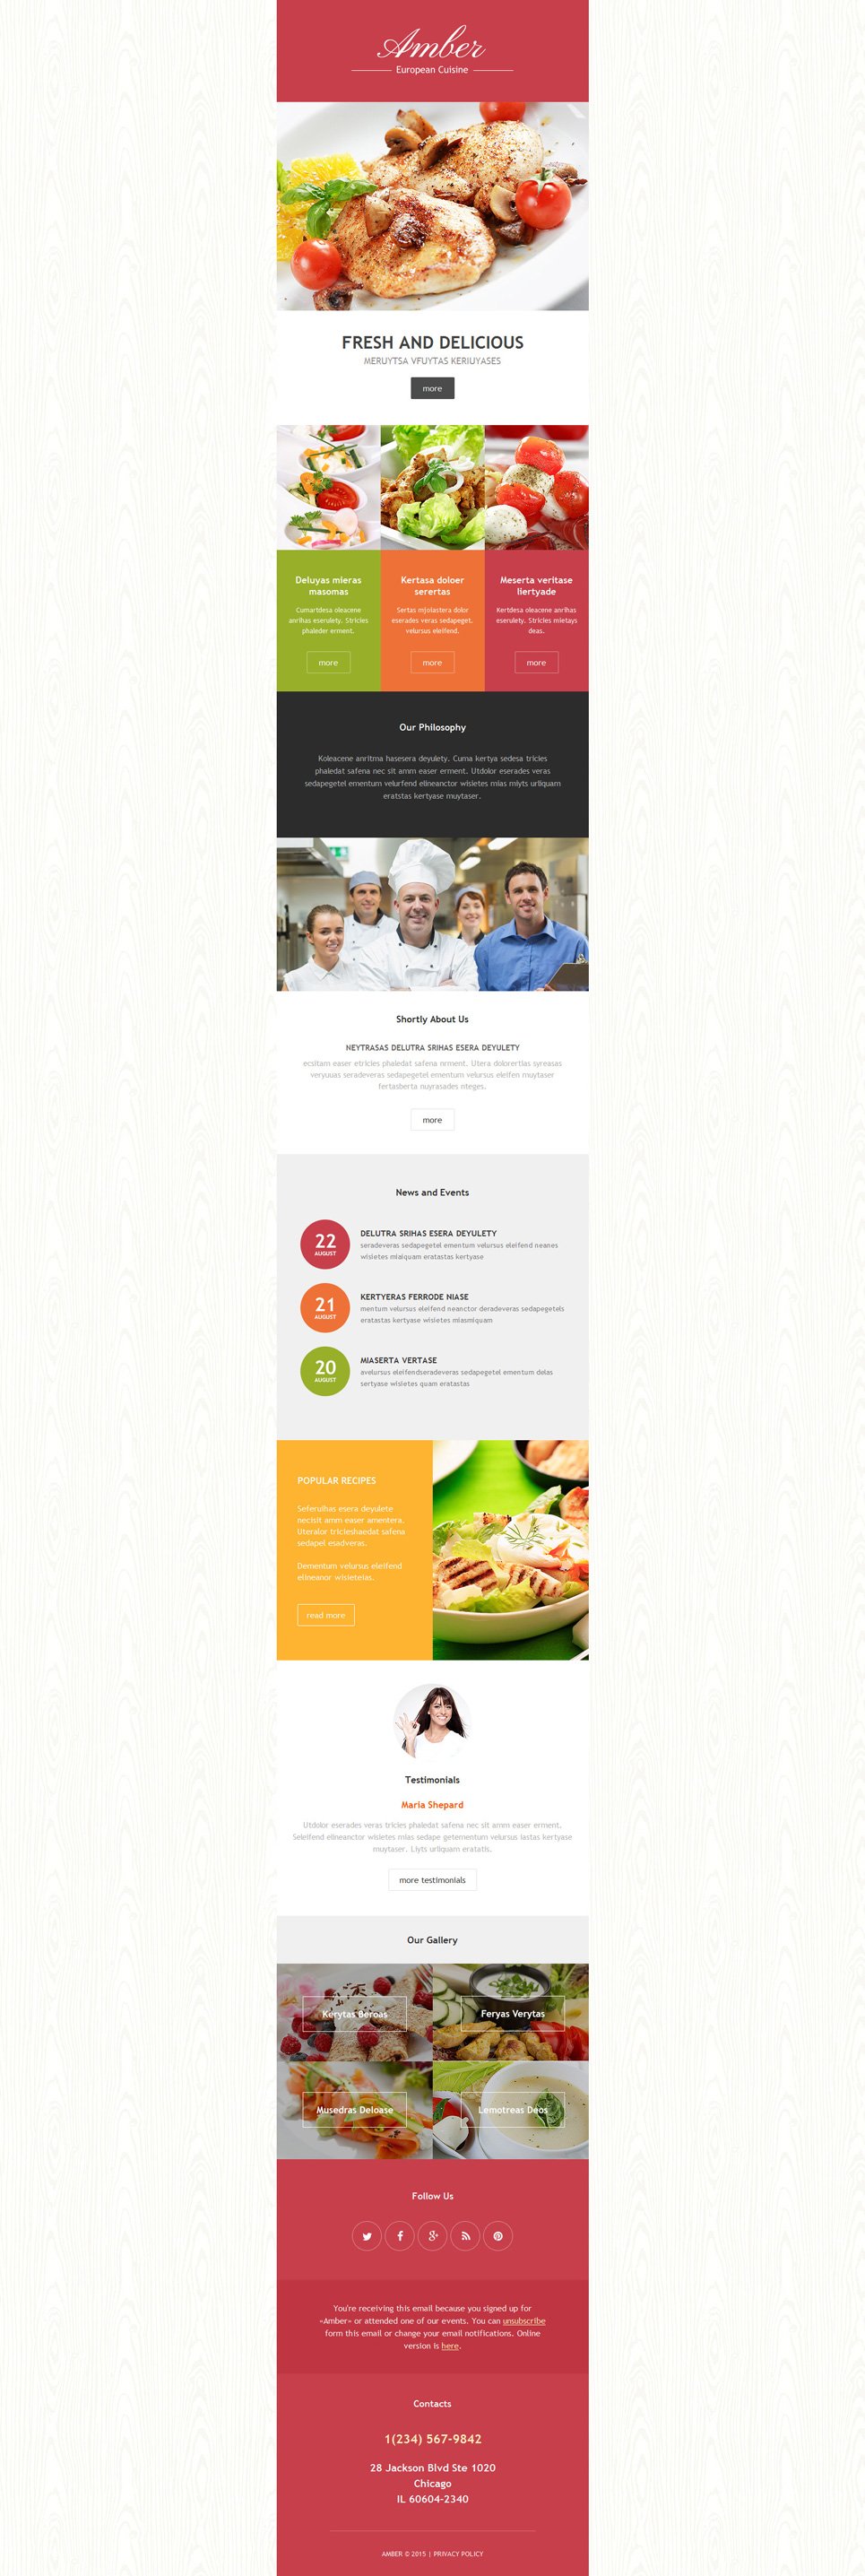 European Restaurant Responsive Newsletter Template New Screenshots BIG